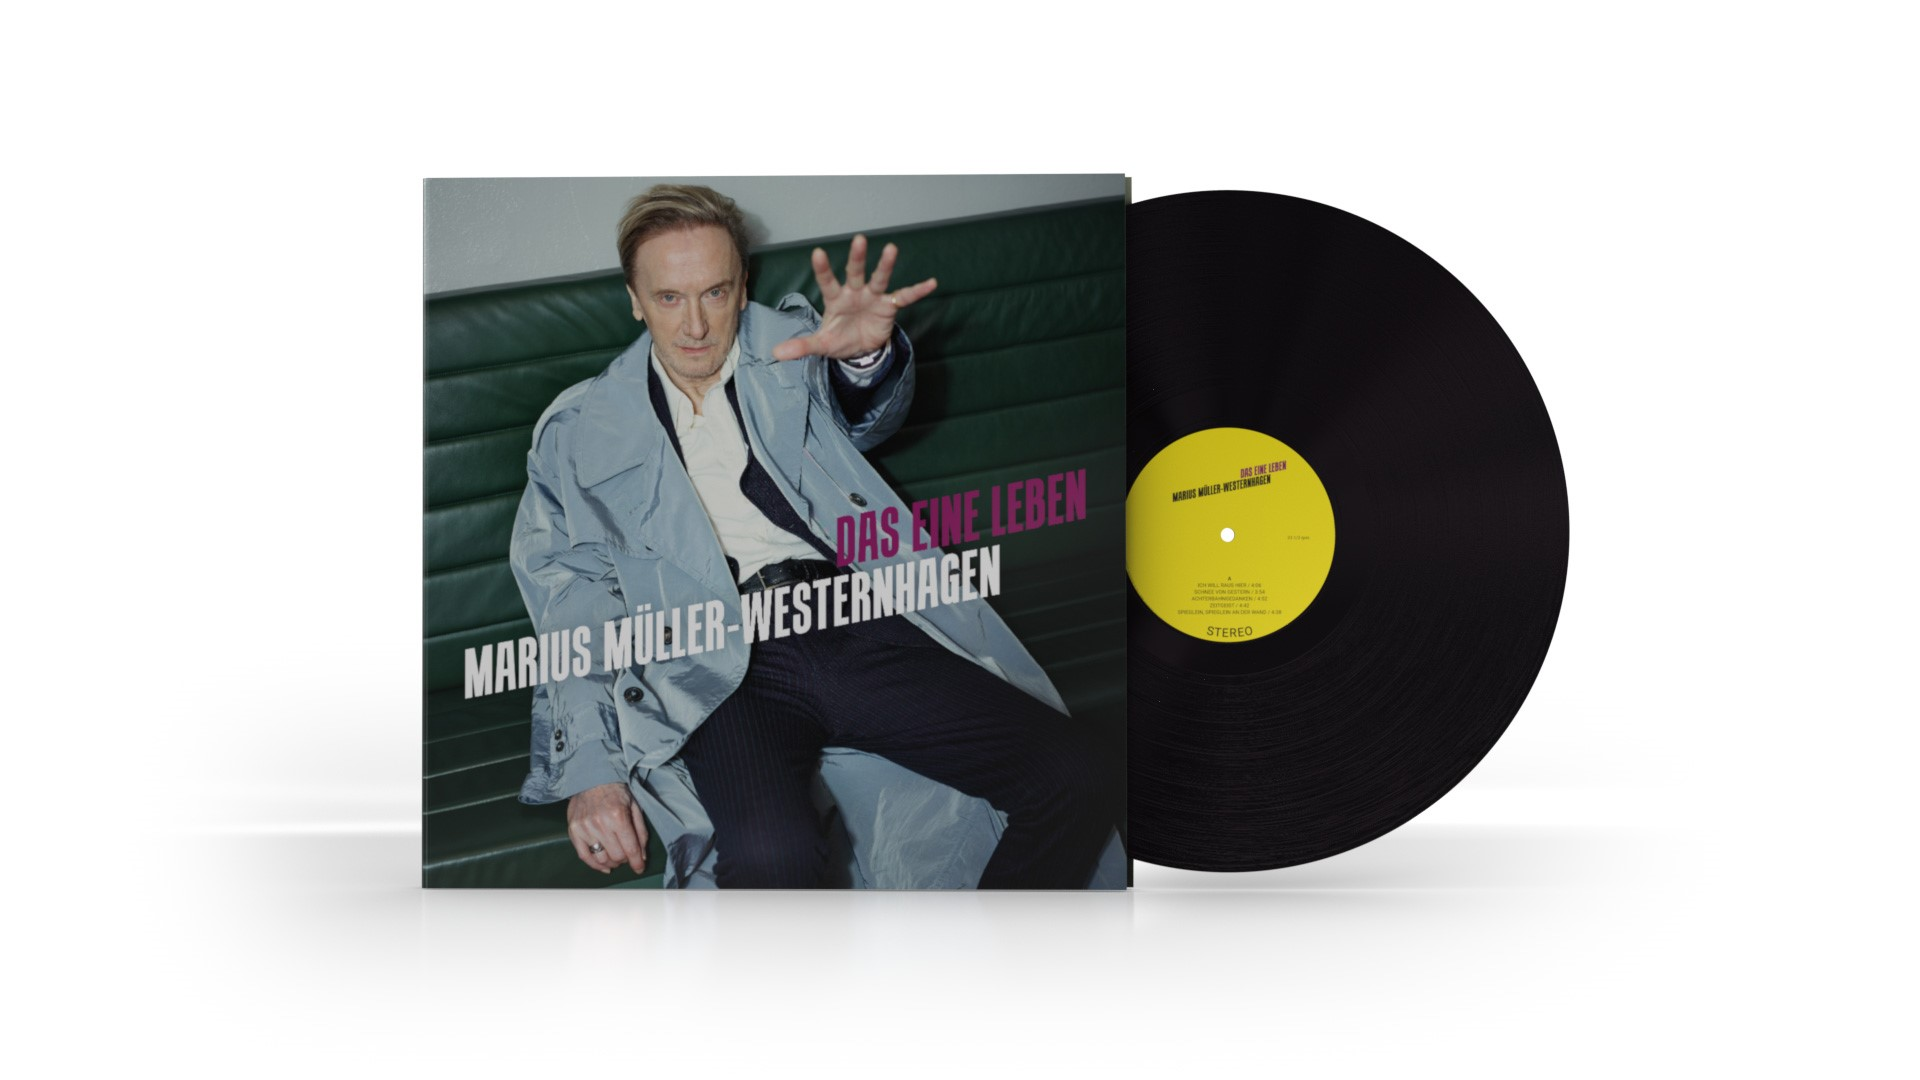 Marius Müller-Westernhagen - Das eine black - black vinyl) (Vinyl) Leben 180g, Gatefold, (180g